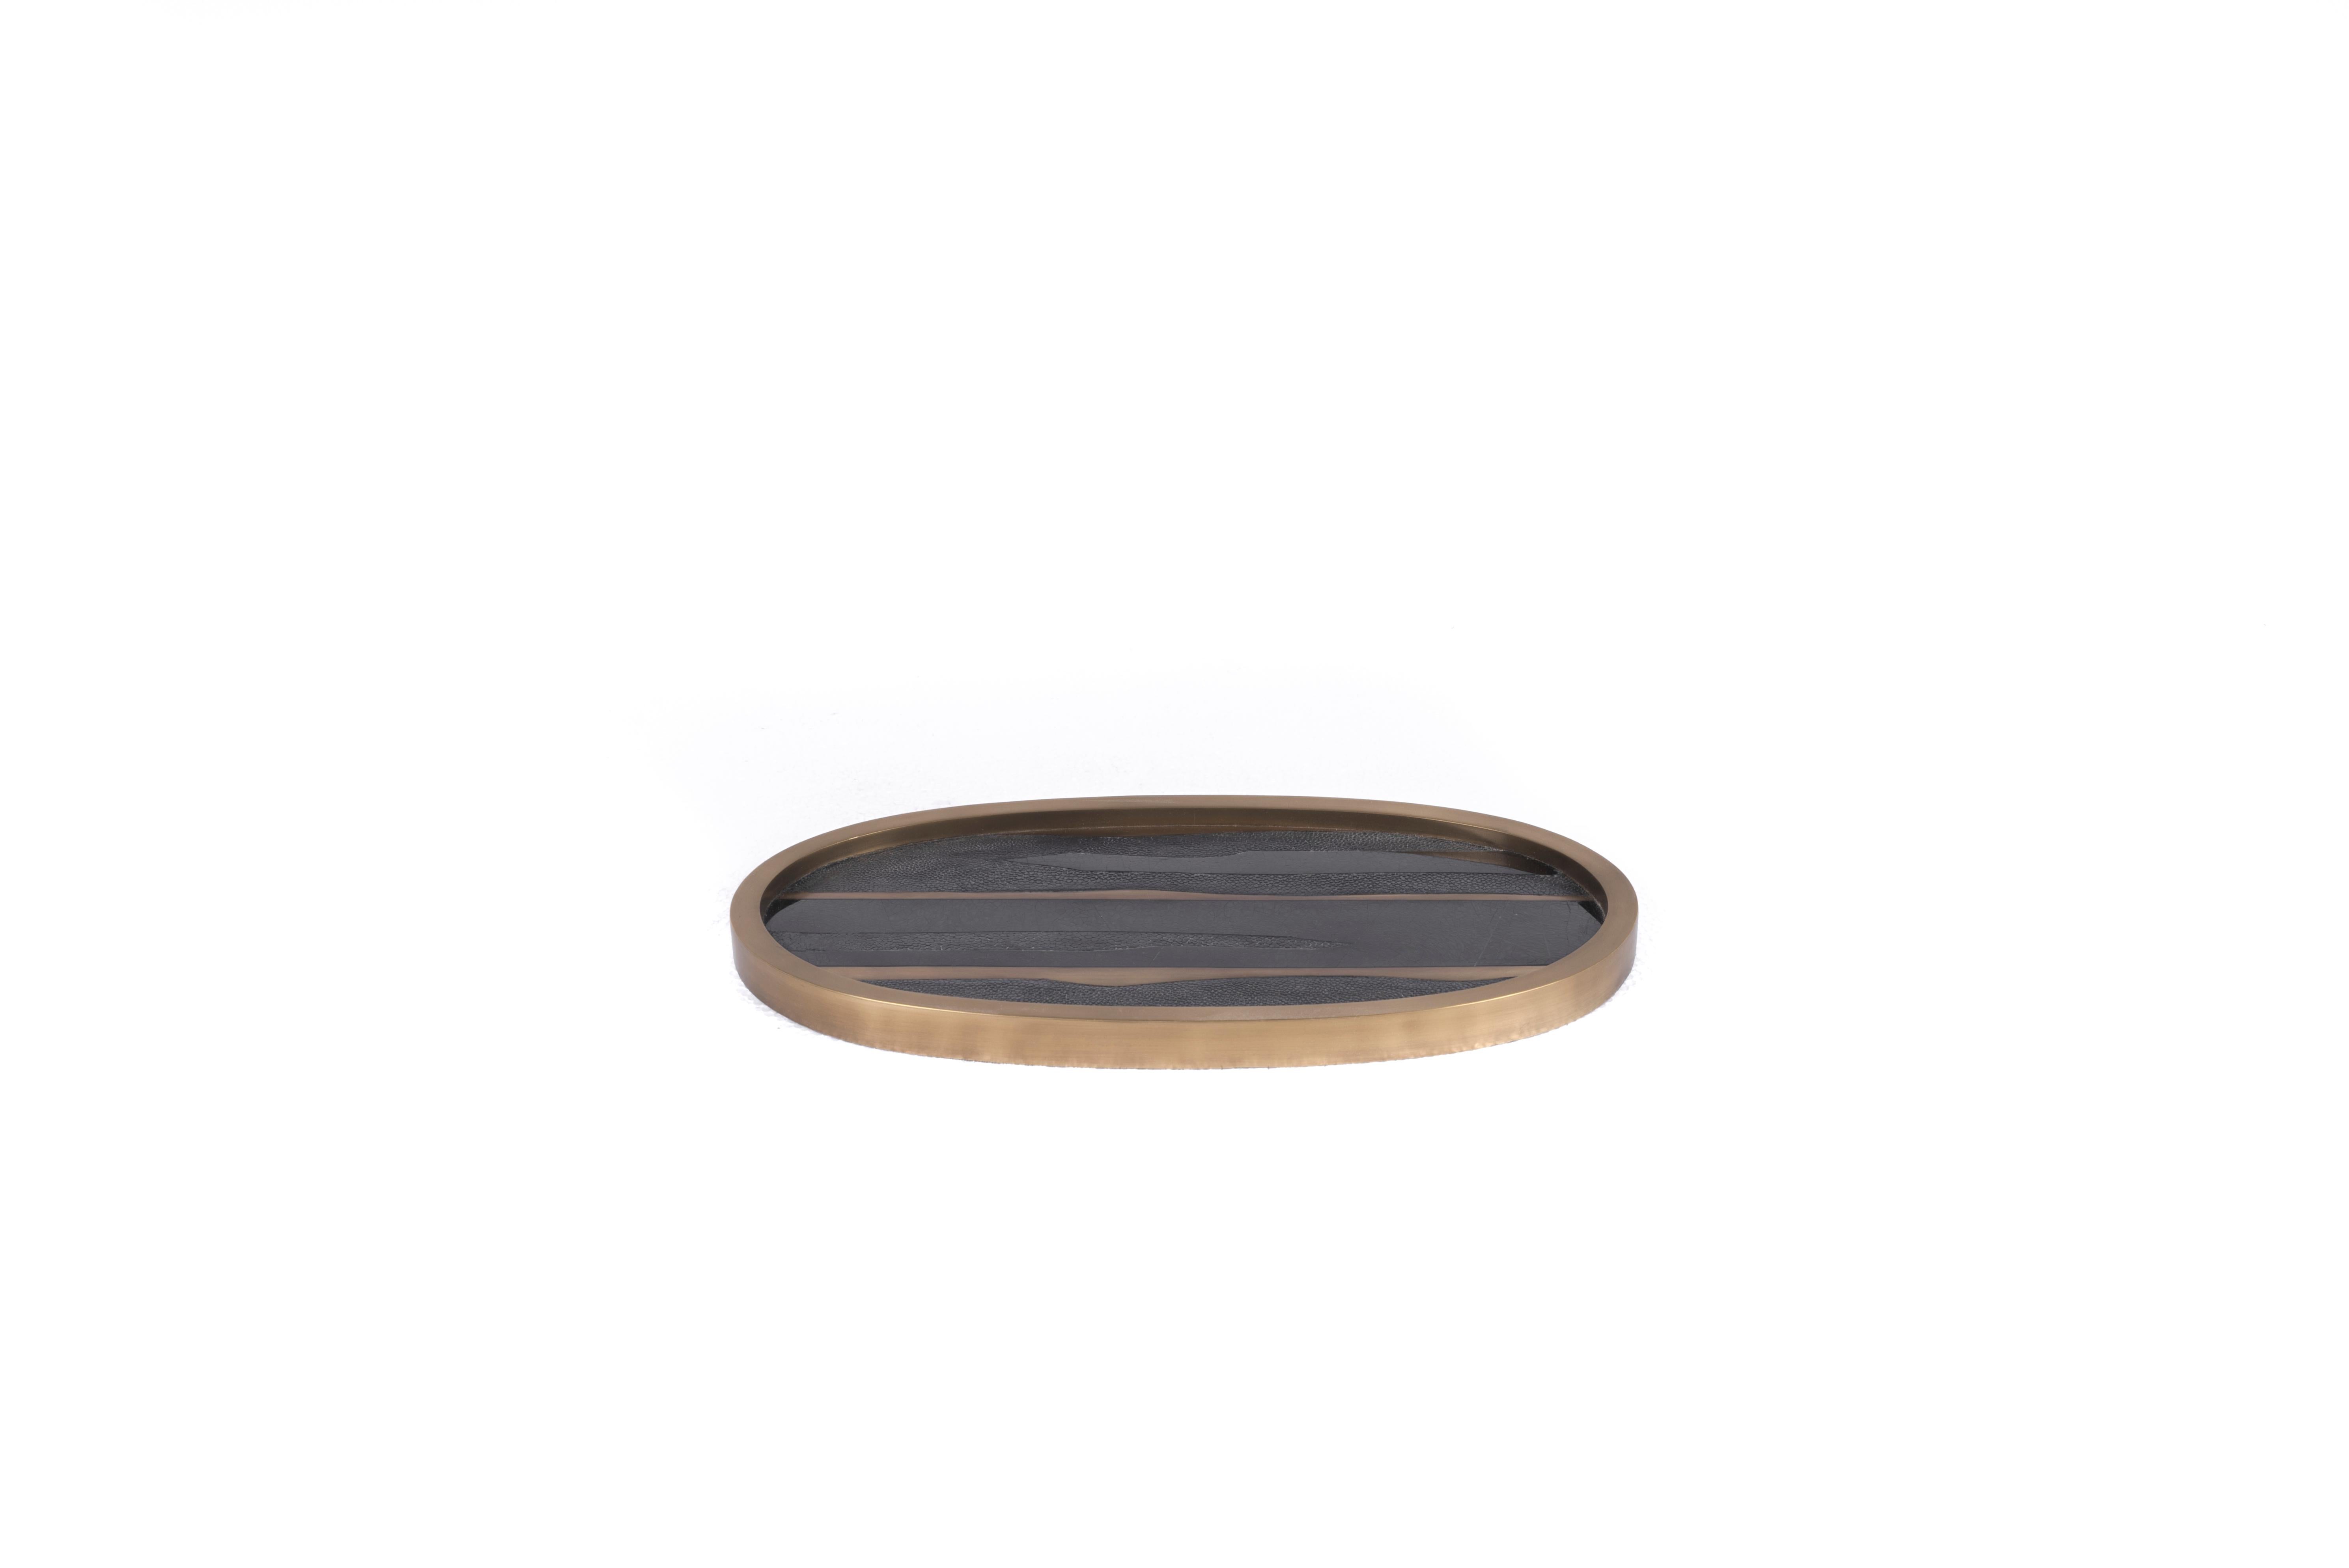 Dieses ovale Tablett von Kifu Paris mit maritimem Streifenmuster besteht aus einer Mischung aus schwarzem Chagrin, schwarzer Muschel und Messing in Bronze-Patina-Optik und ist ein wunderschönes Tischset für jeden Raum. Der Rahmen ist in